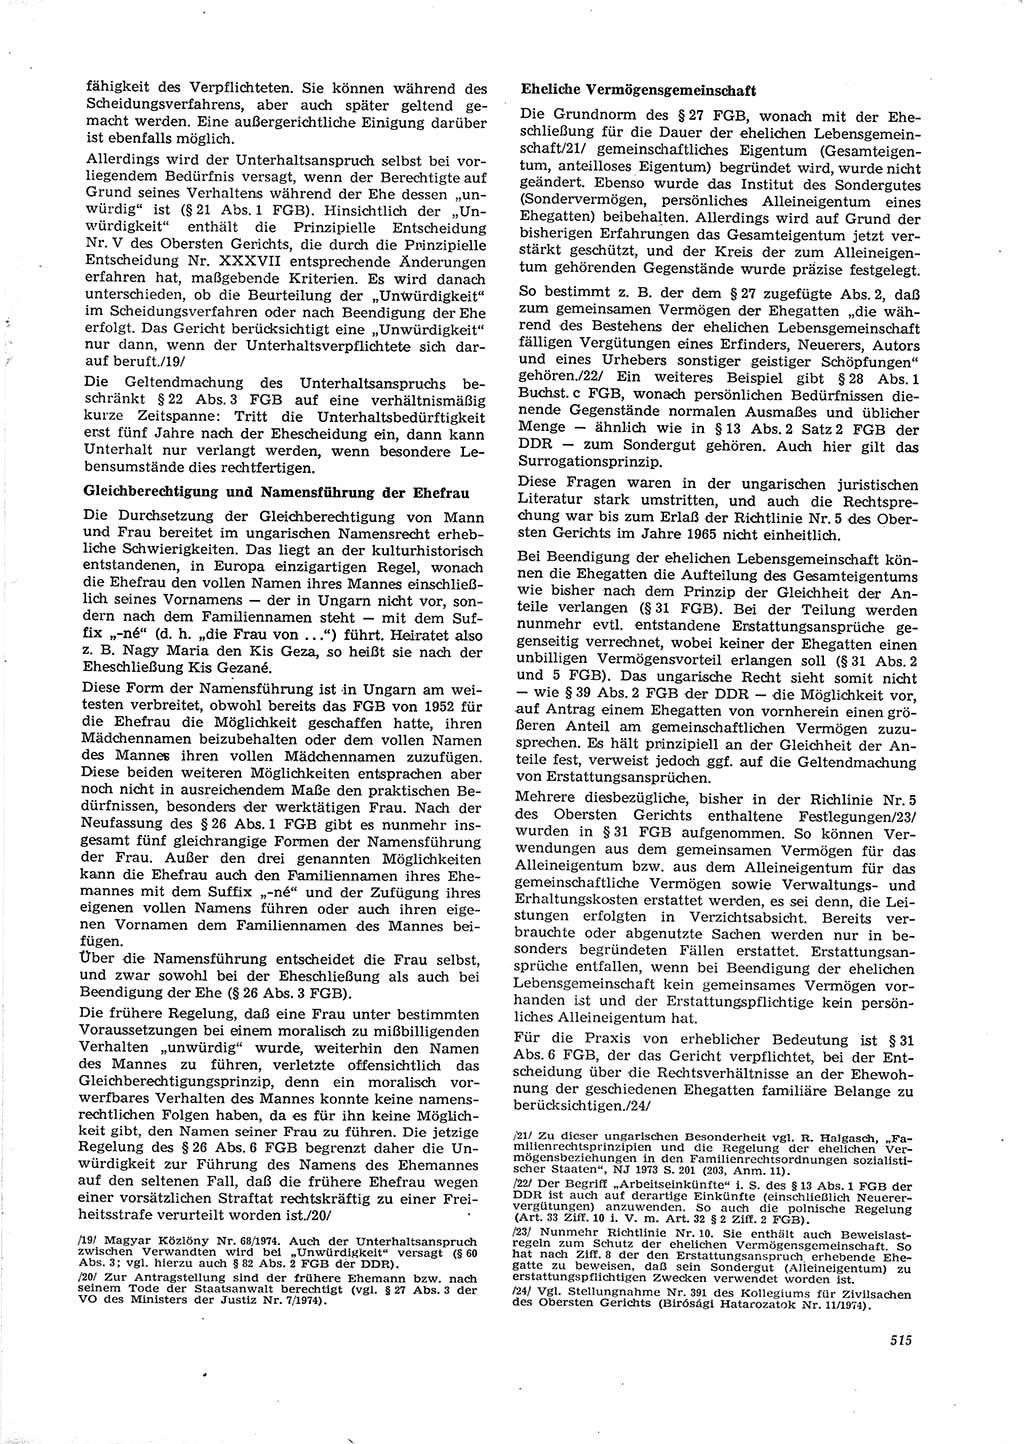 Neue Justiz (NJ), Zeitschrift für Recht und Rechtswissenschaft [Deutsche Demokratische Republik (DDR)], 29. Jahrgang 1975, Seite 515 (NJ DDR 1975, S. 515)